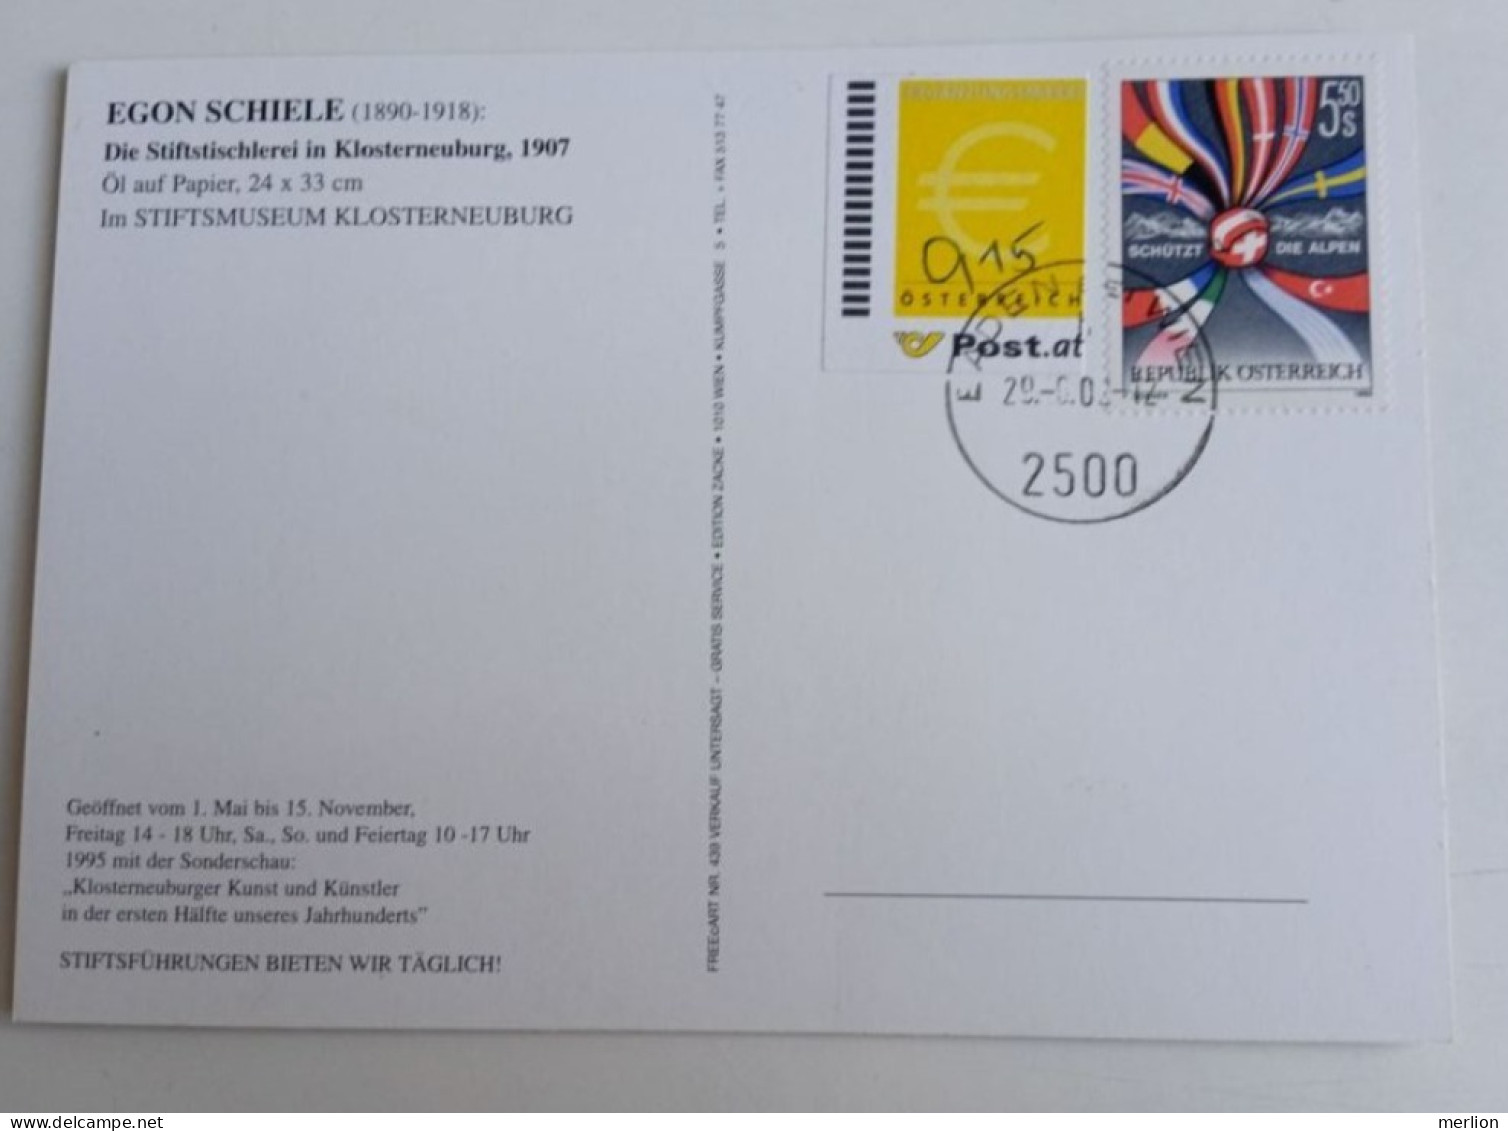 D203018  Österreich   Postkarte Vom 29.06.2002 Mit Ergänzungsmarke € 0,15  Mit Stempel  Baden Bei Wien - Covers & Documents